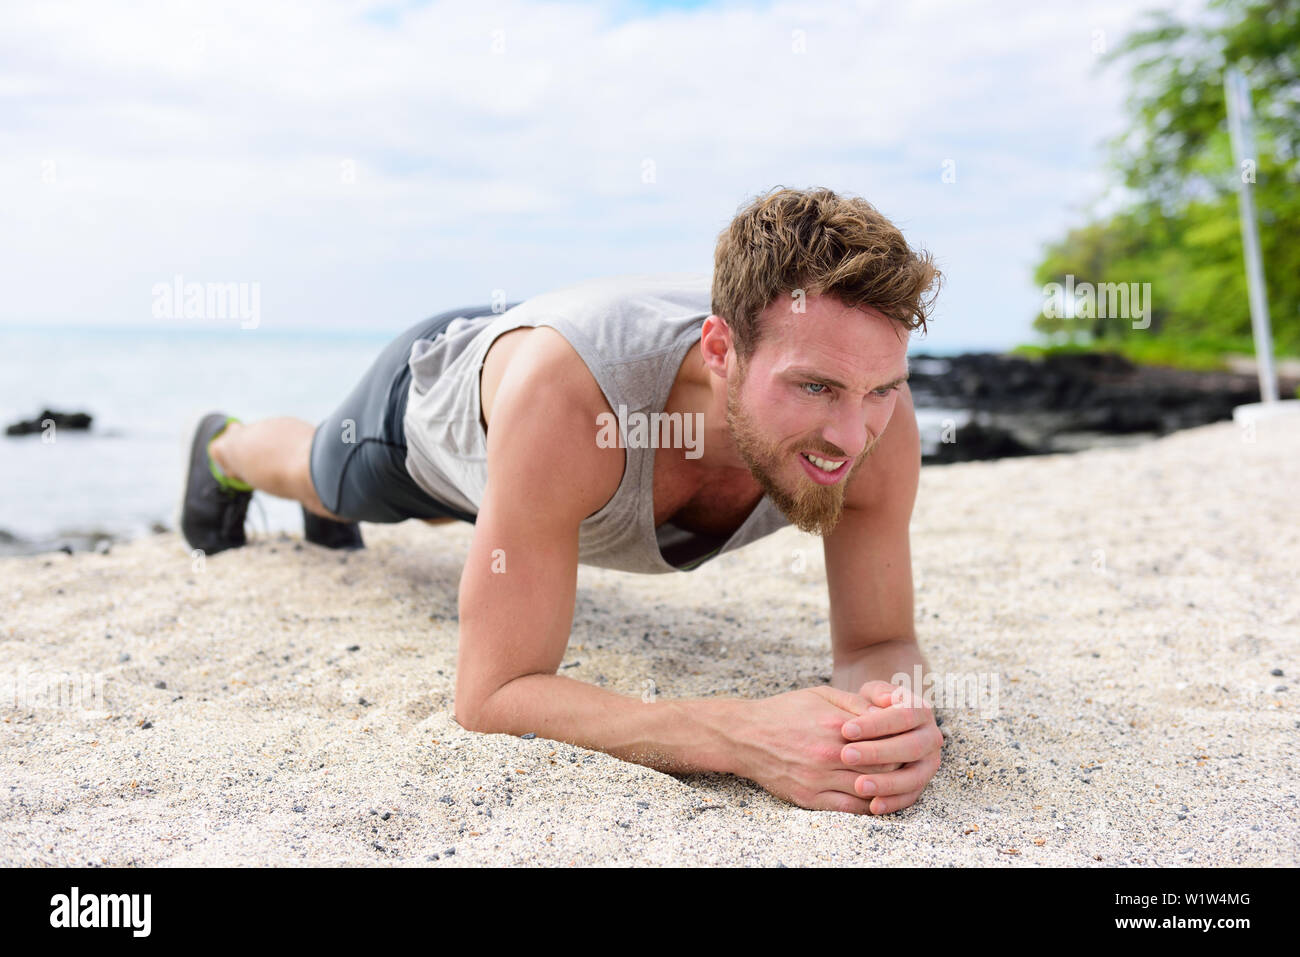 Crossfit training fitness Mann tun Plank core Übung arbeiten aus seinem Mittelteil Muskeln. Passen Athleten fitness Cross Training Beplankung Ausübung draußen im Sand am Strand. Stockfoto